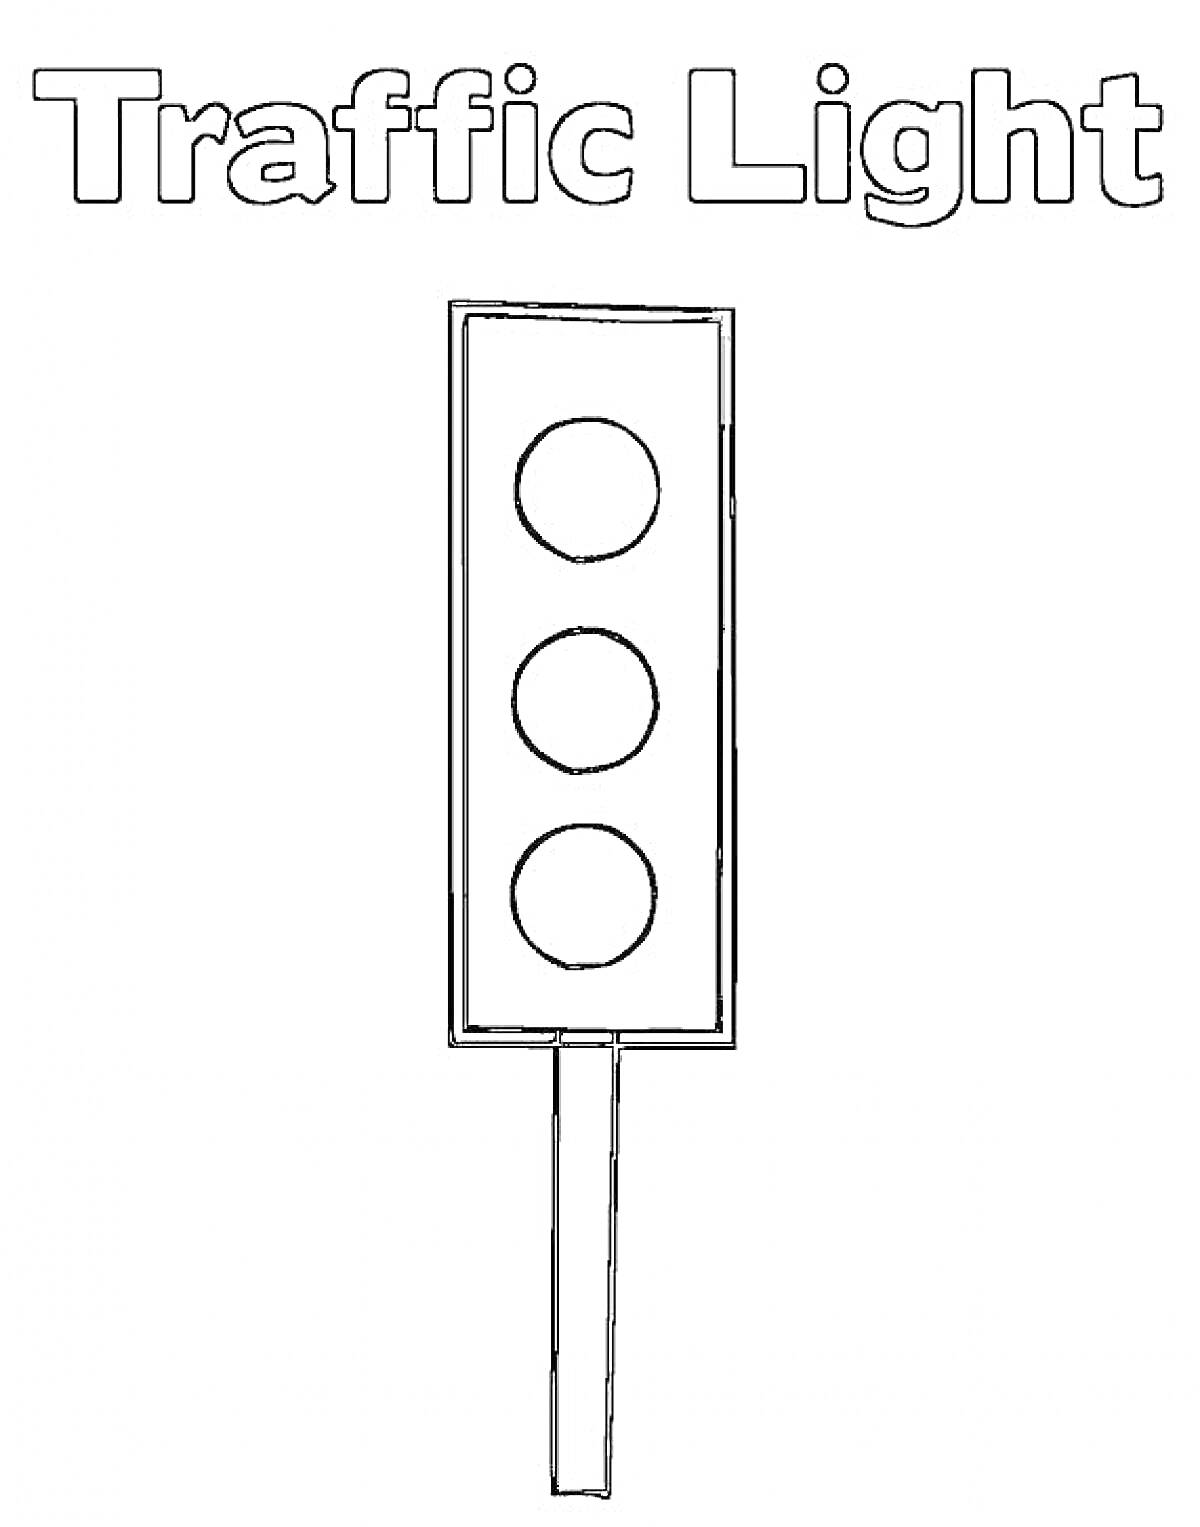 Светофор с надписью Traffic Light, три световых индикатора и столб